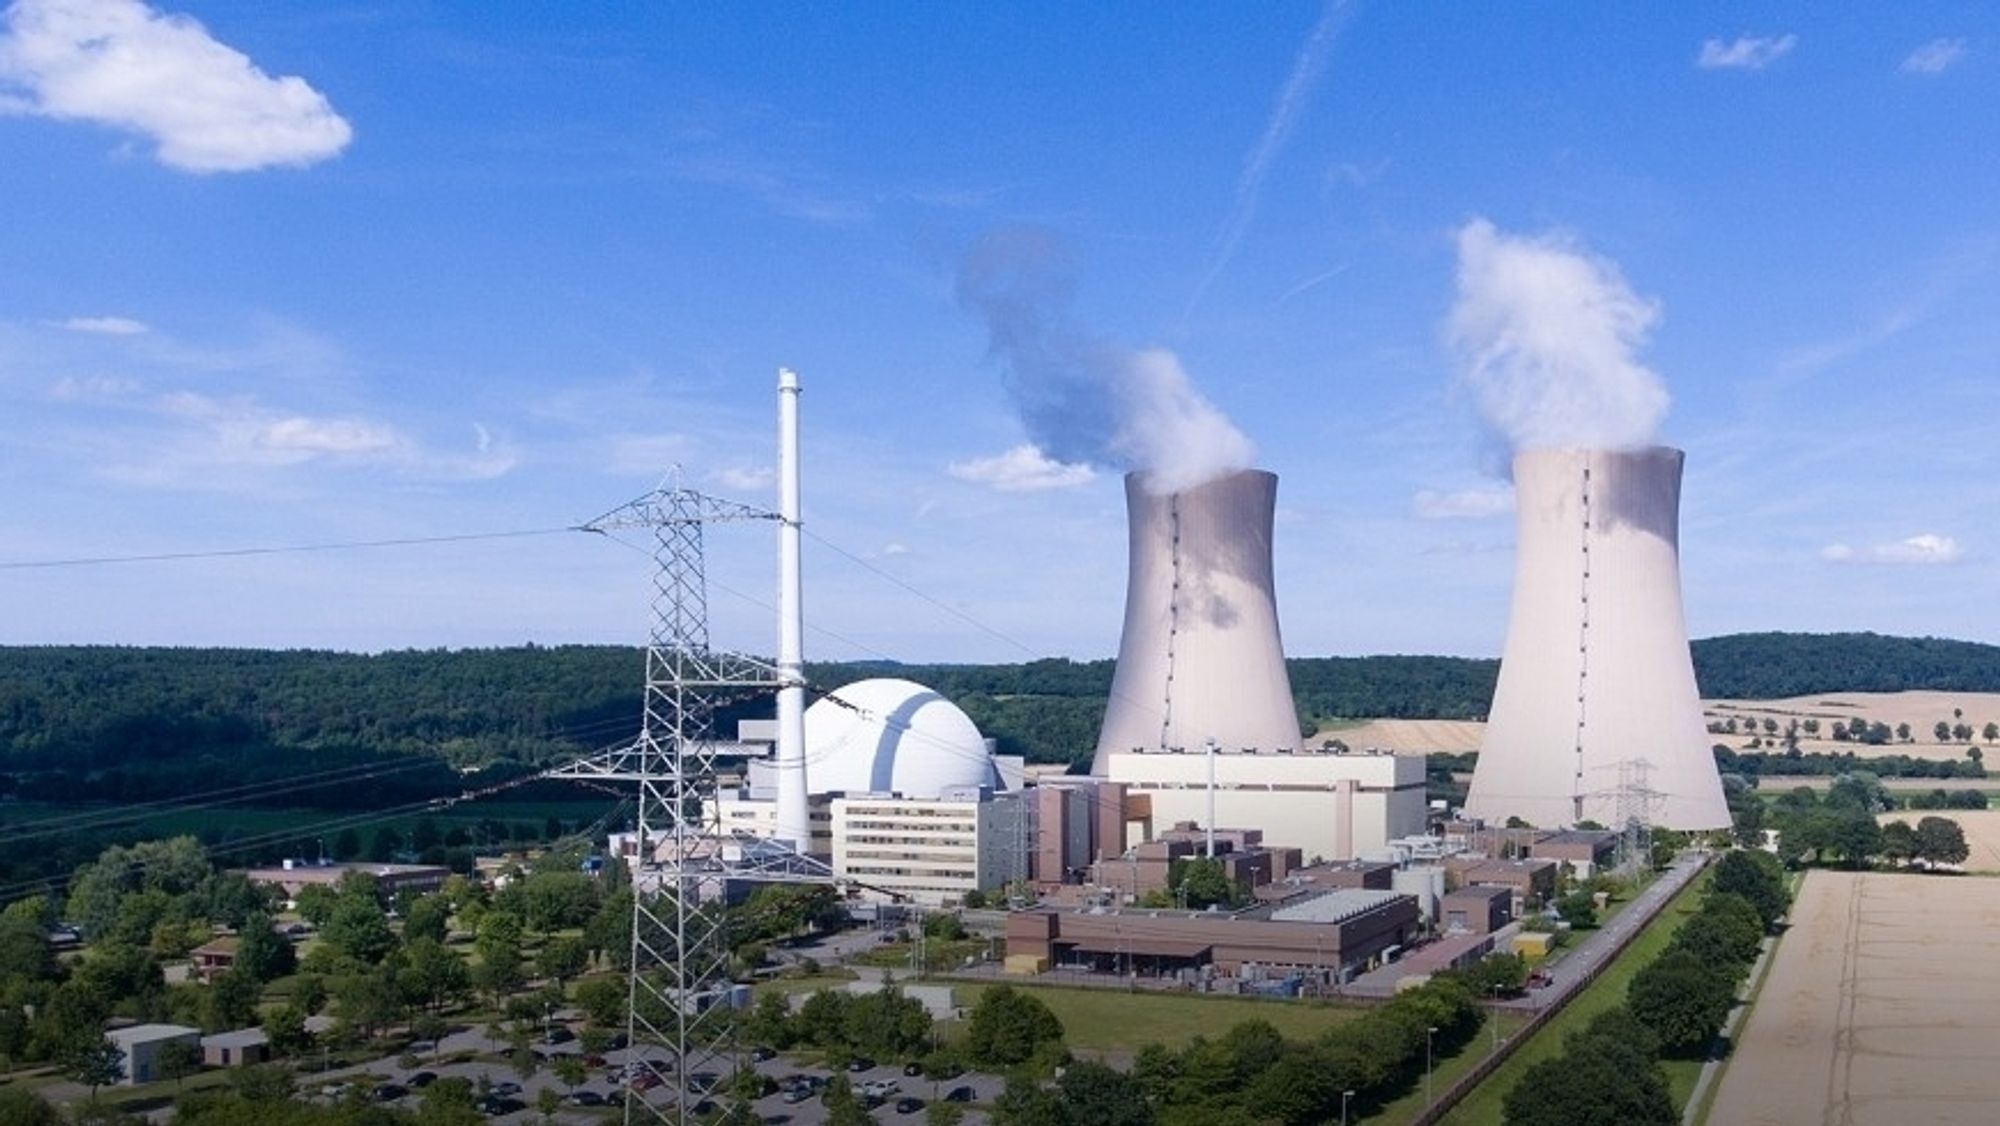 Grohnde kjernekraftverk produserer rundt 11 TWh strøm i året. Ifølge selskapet selv sparer det miljøet for nesten ti millioner tonn CO2 årlig.